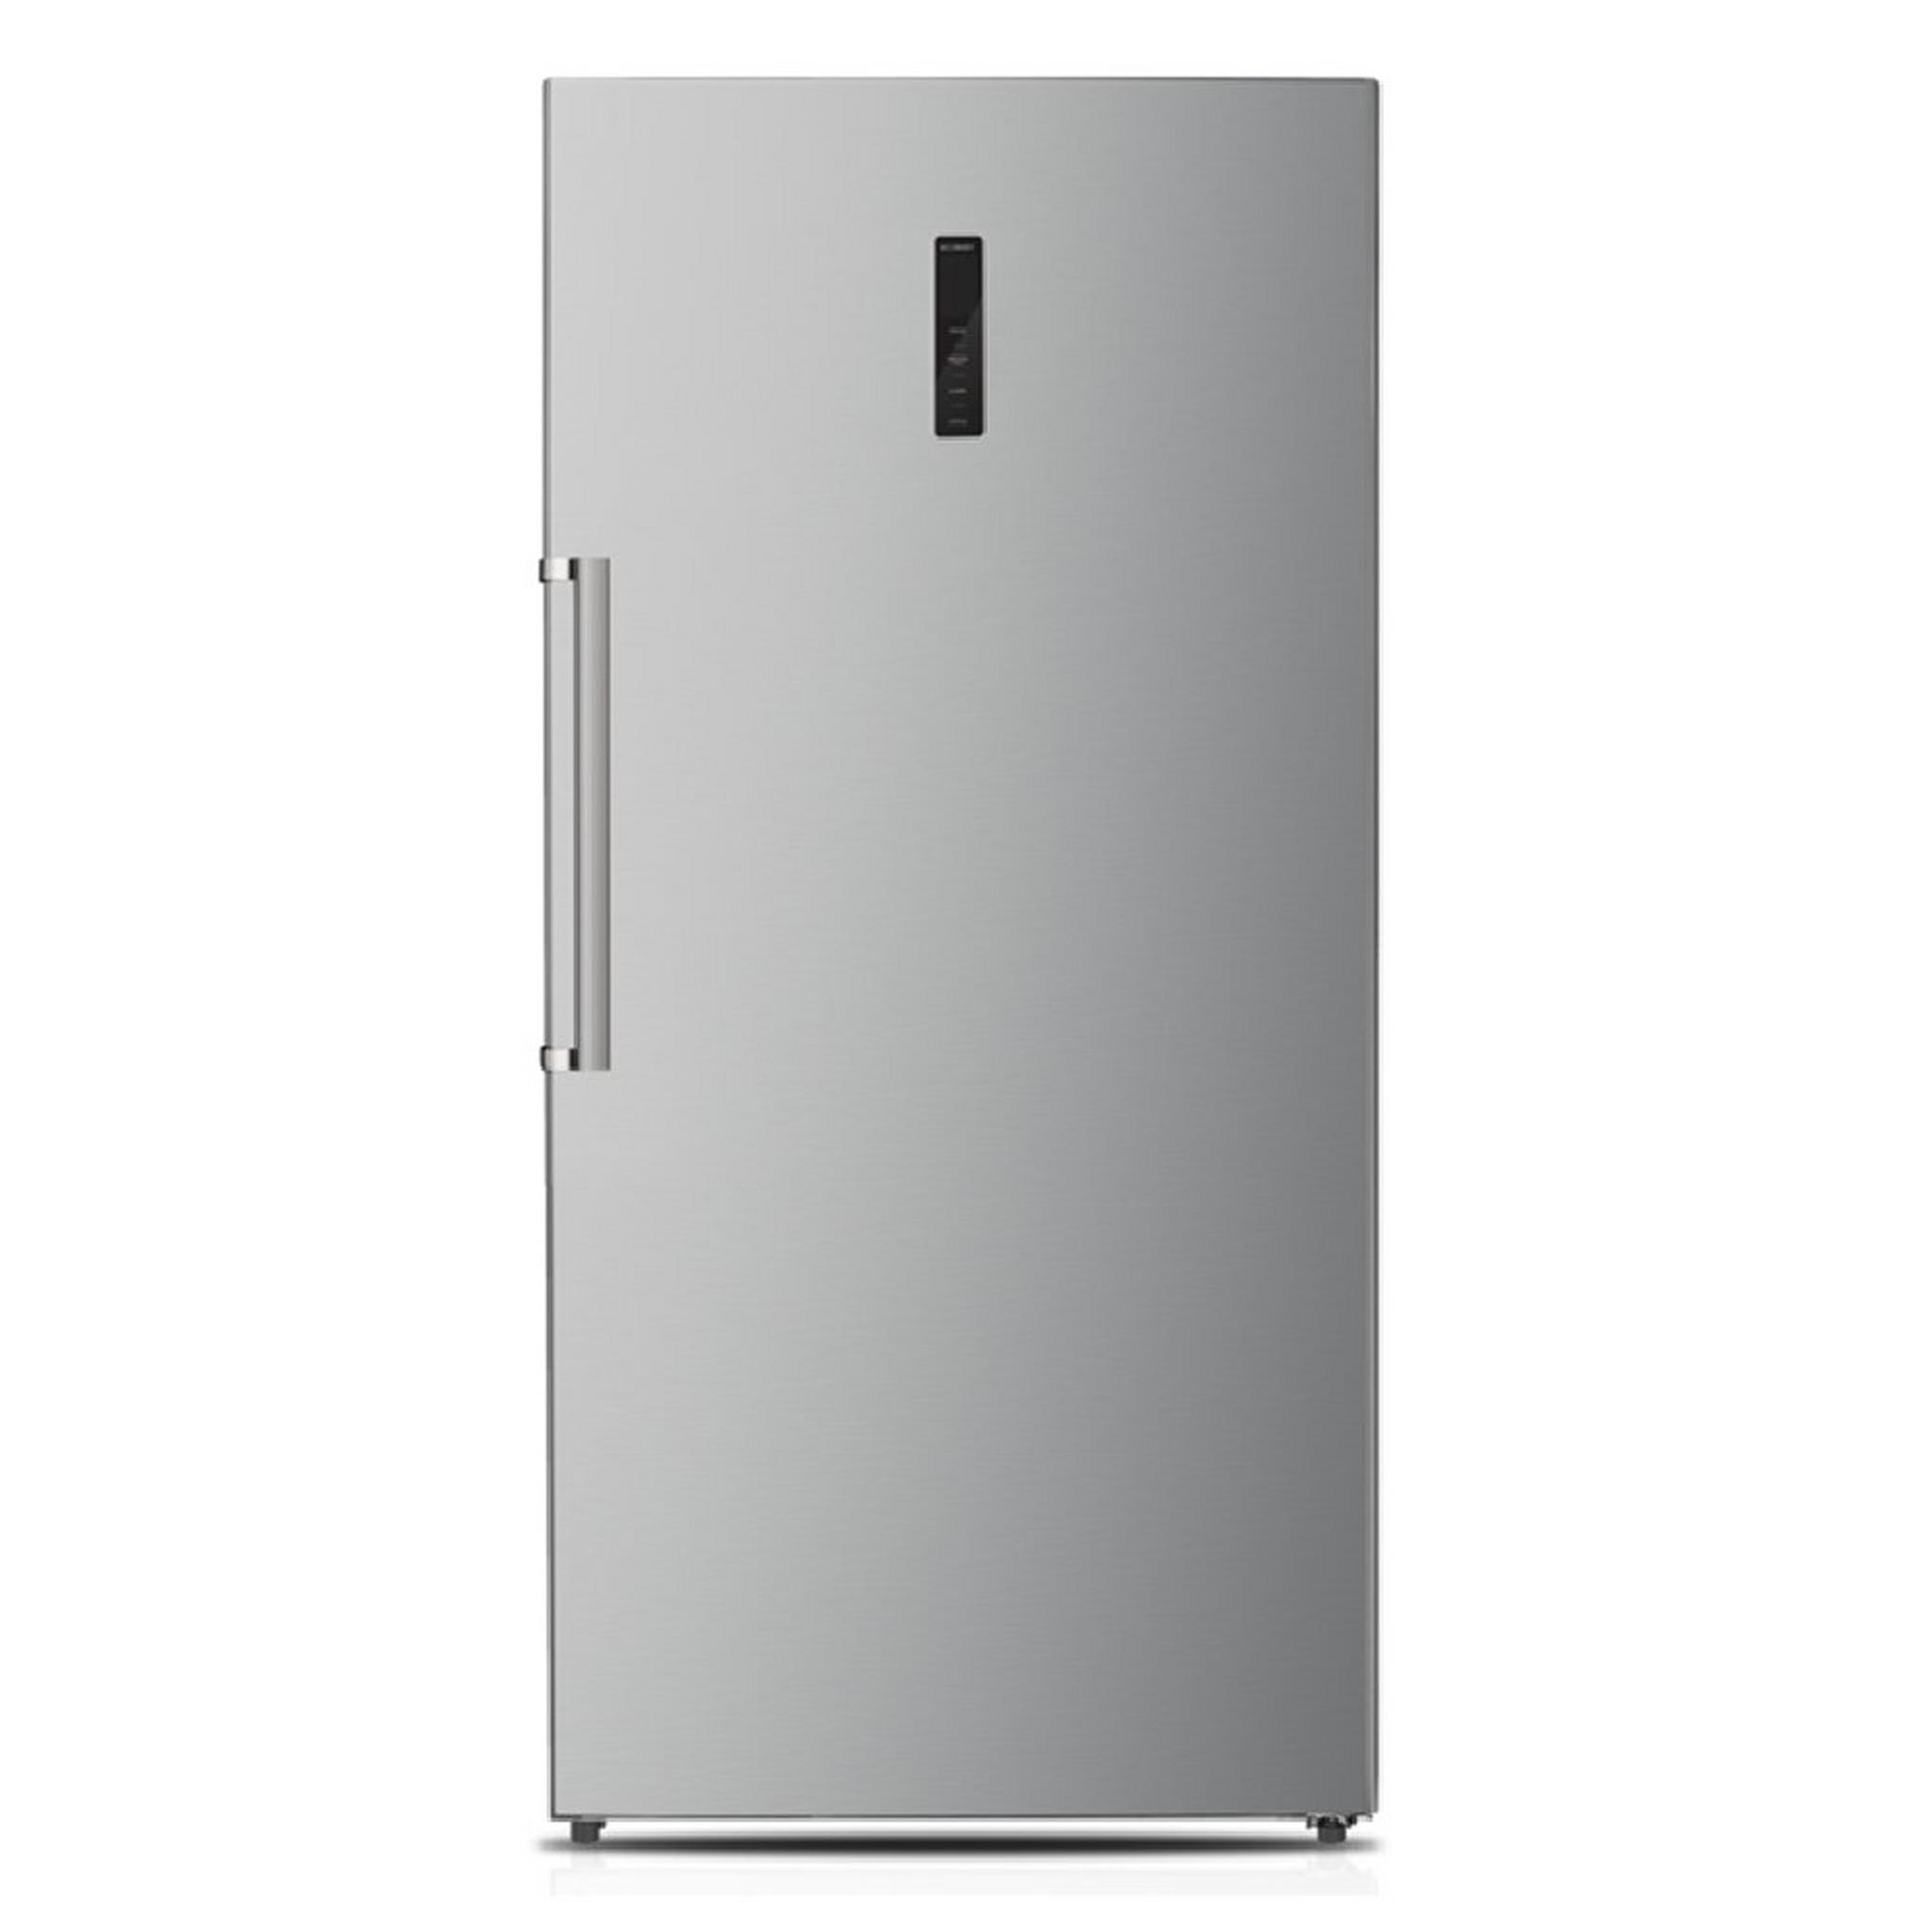 Wansa Convertible Upright freezer & Fridge, 23 CFT, 658L Capacity, WUOW600NFSC82 – Inox